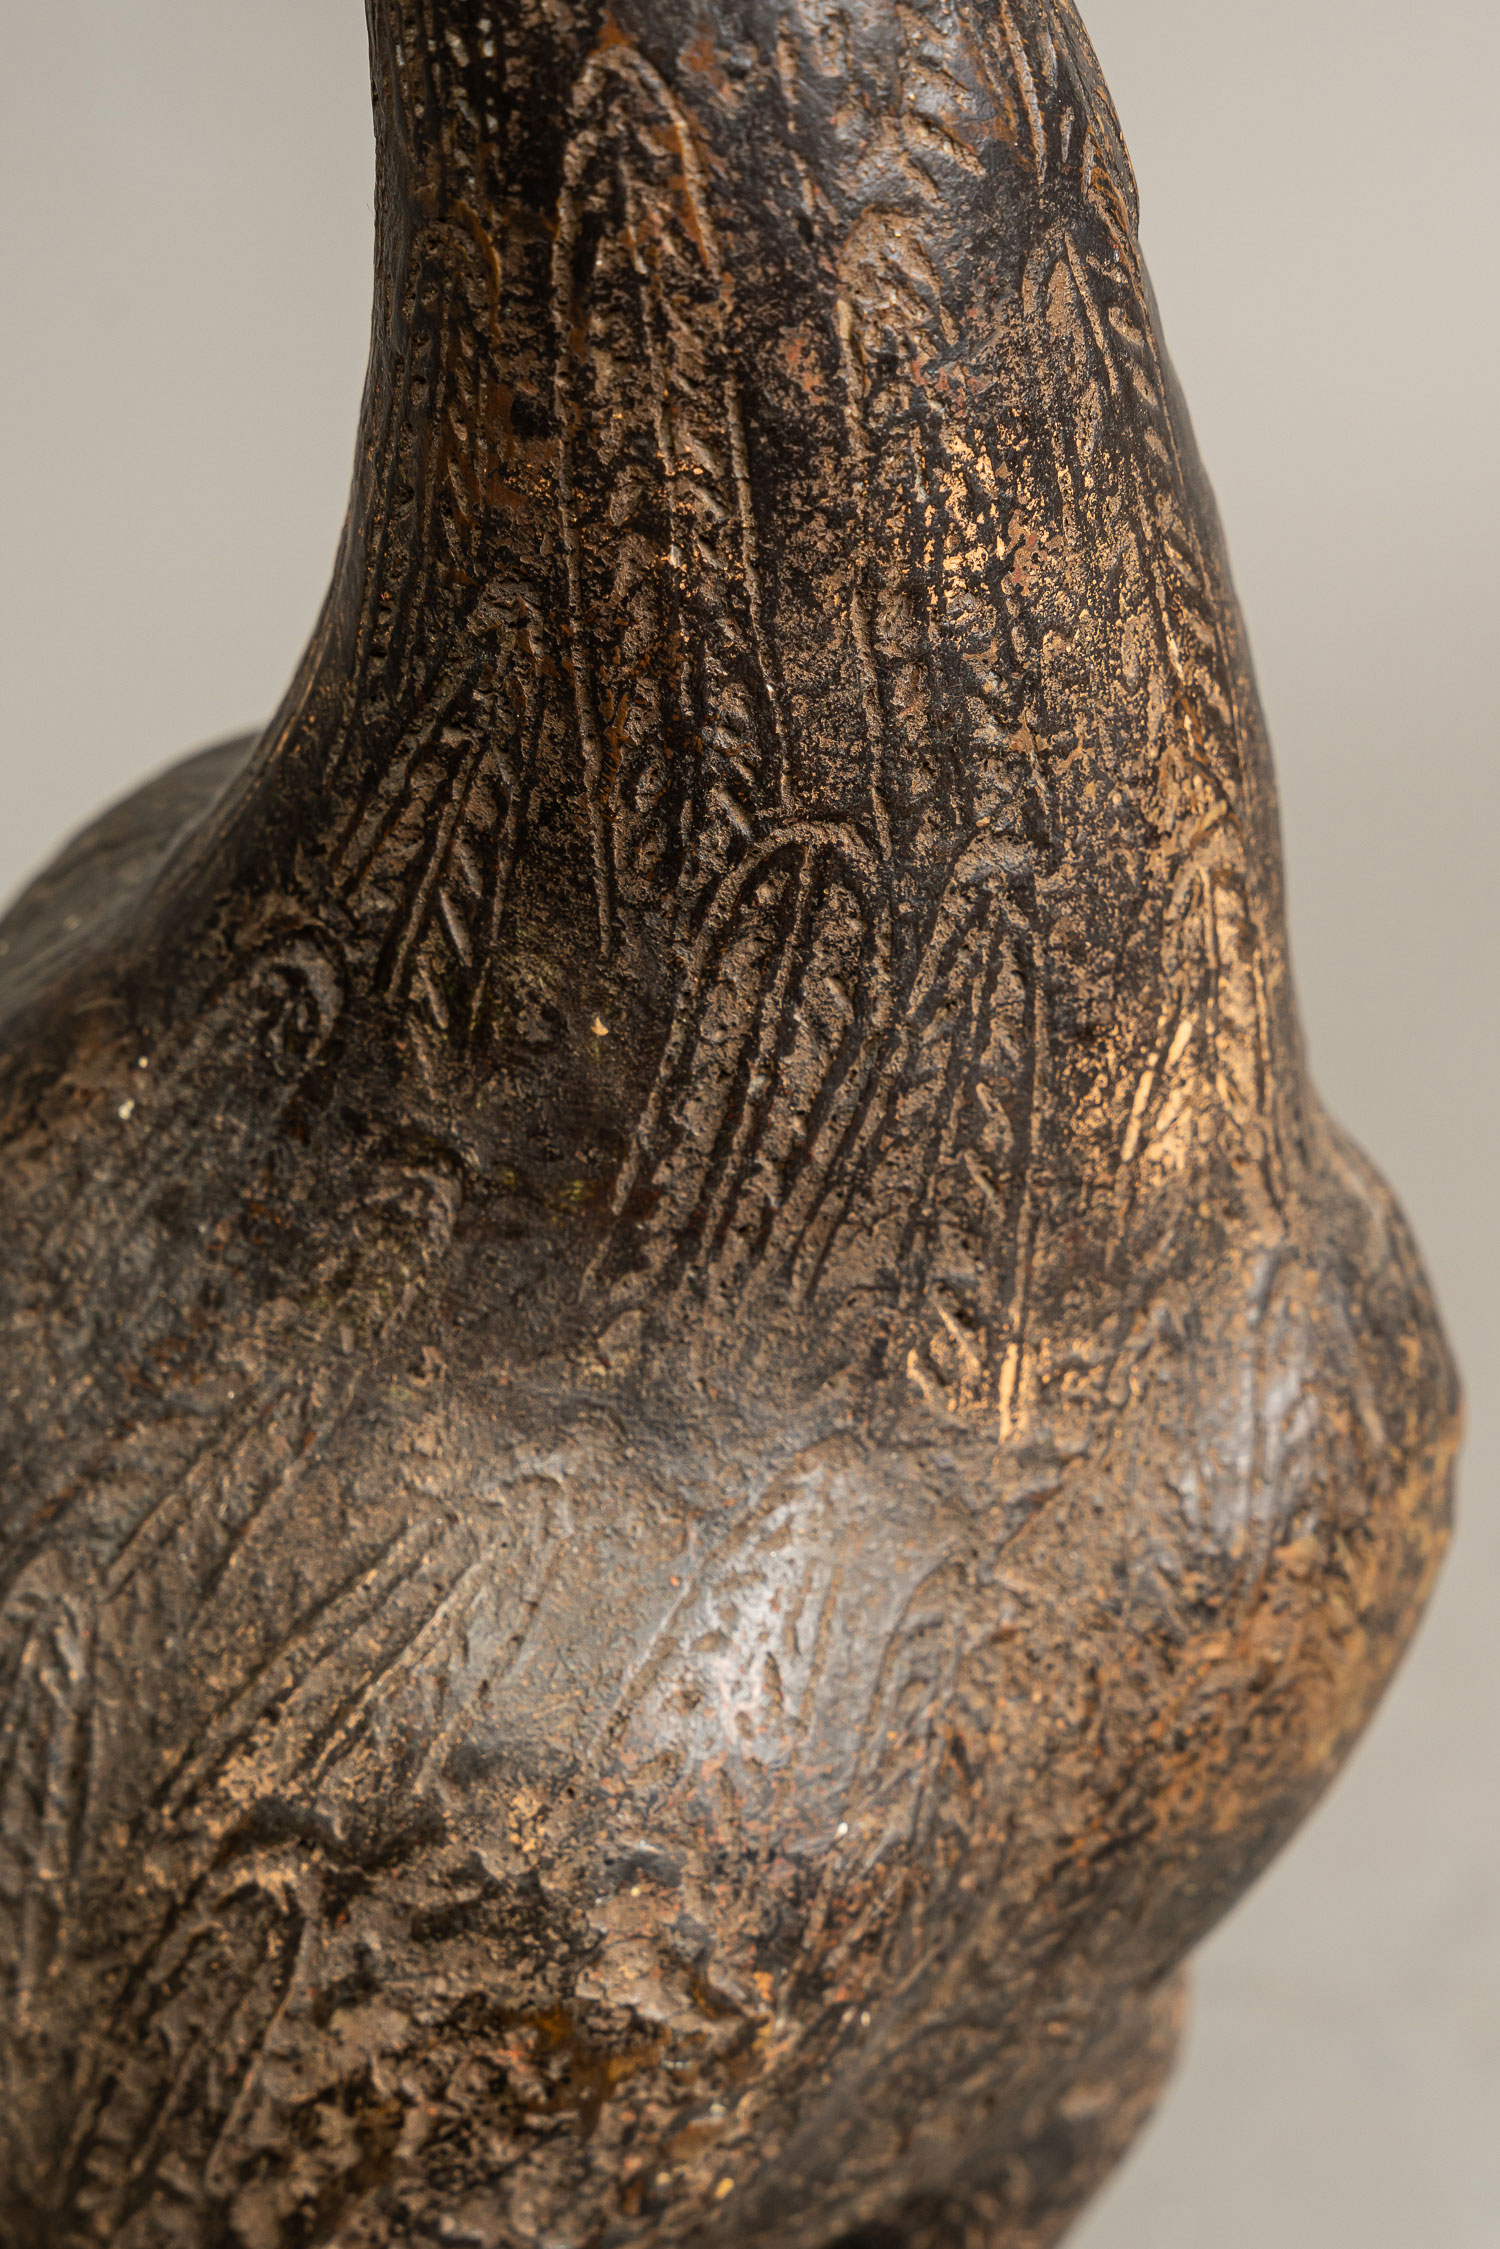 Oriental Bronze - Image 3 of 3